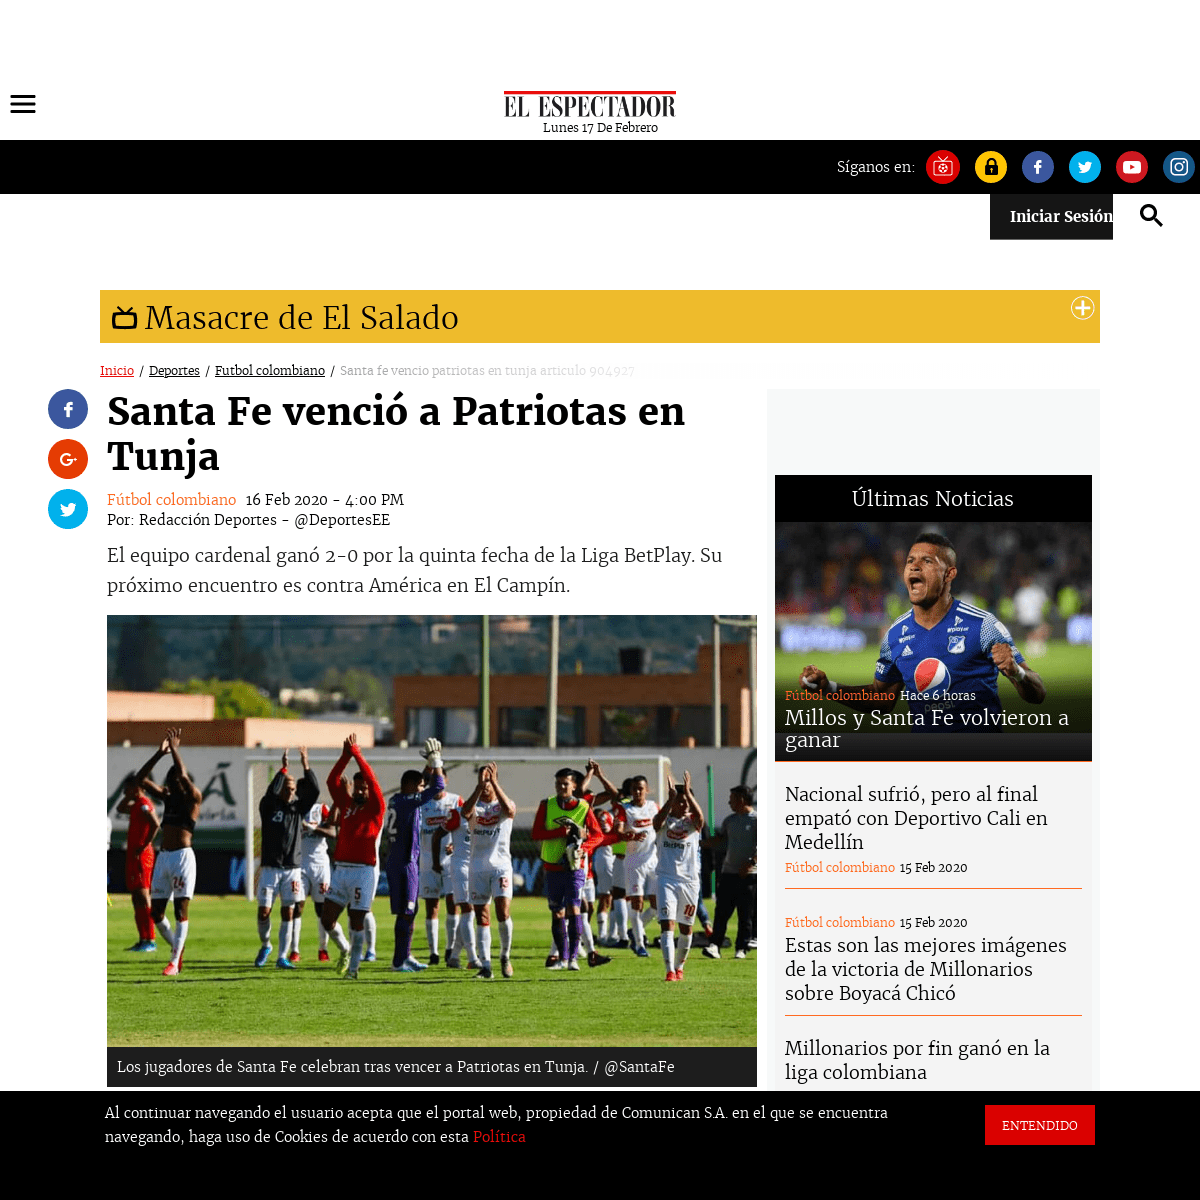 A complete backup of www.elespectador.com/deportes/futbol-colombiano/santa-fe-vencio-patriotas-en-tunja-articulo-904927